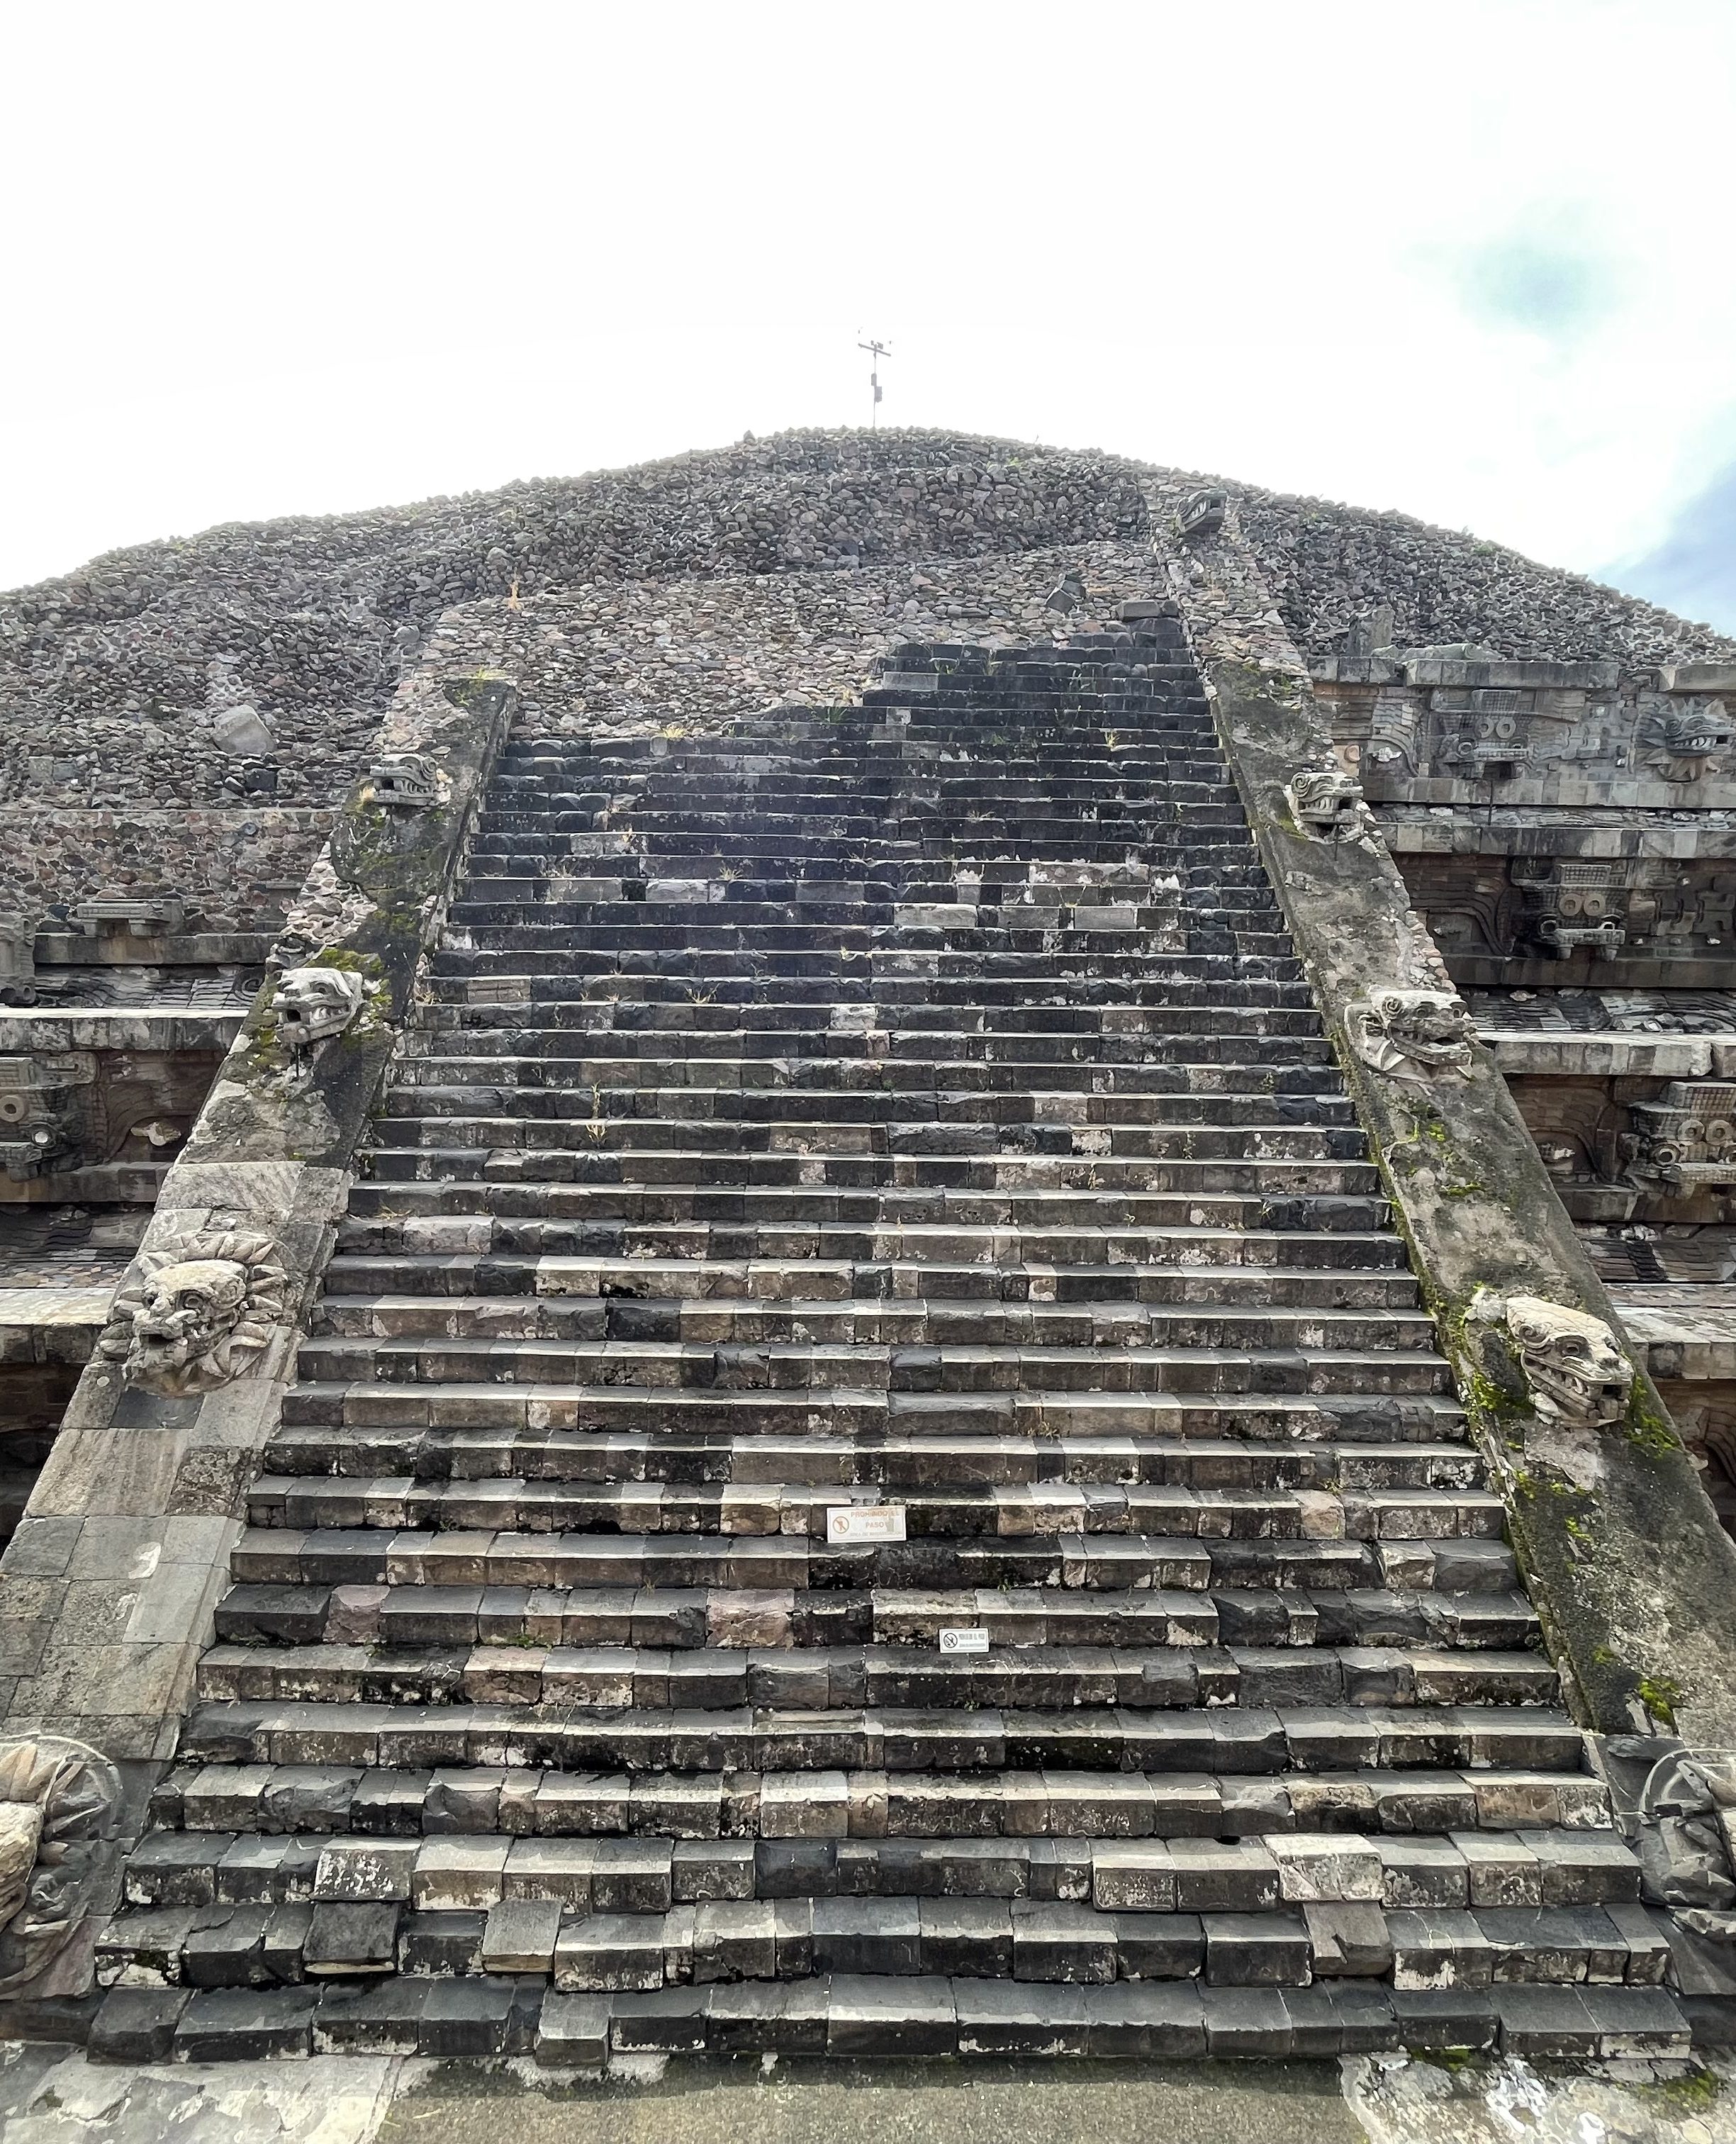 The Temple of Quetzalcoatl